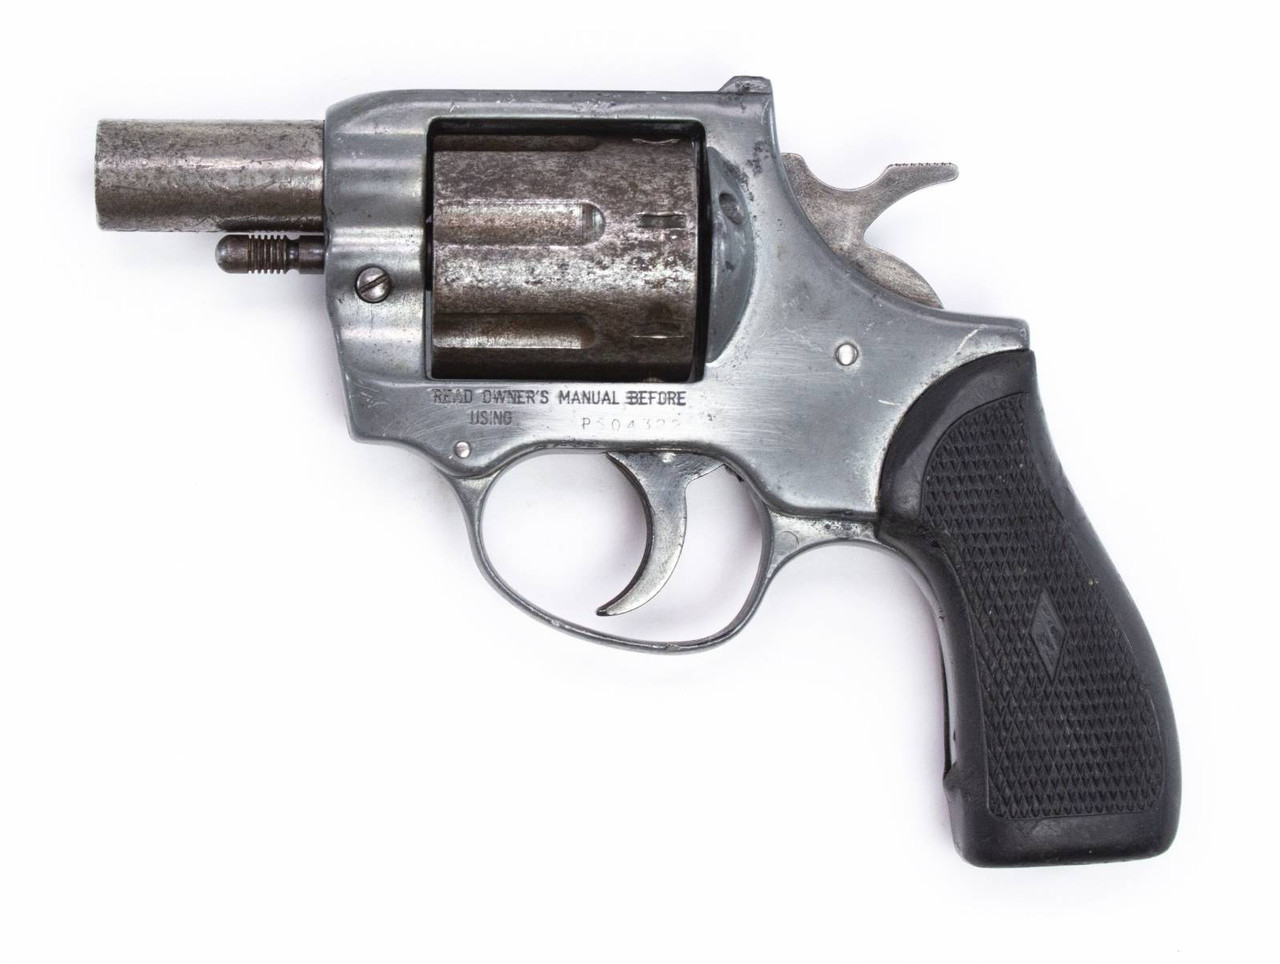 32 ACP revolver